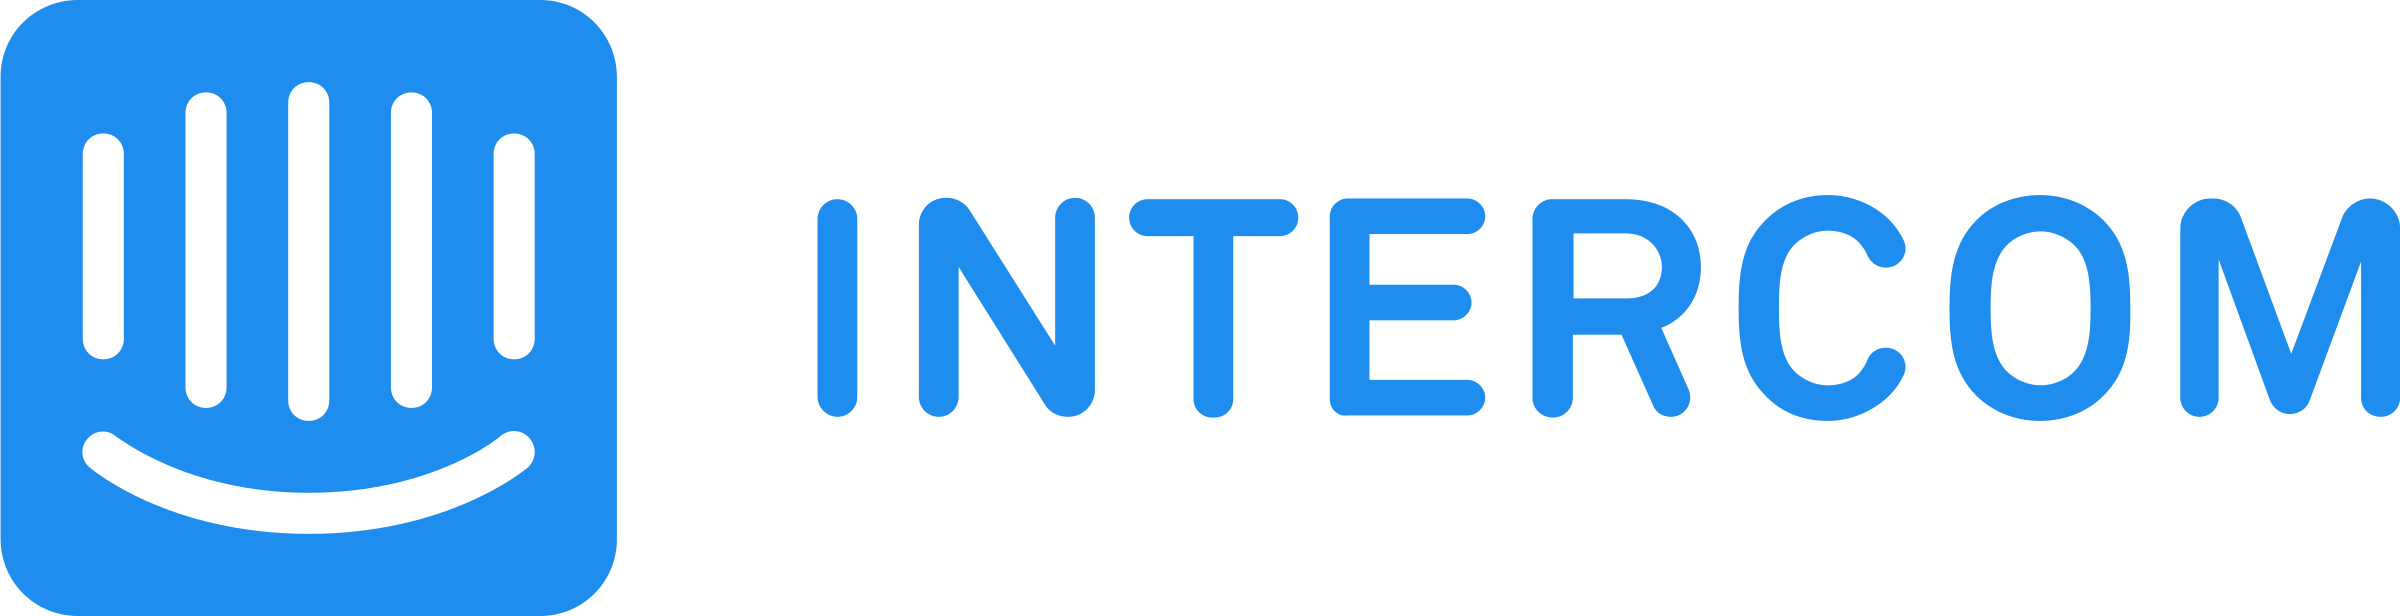 intercom-1-logo-png-transparent